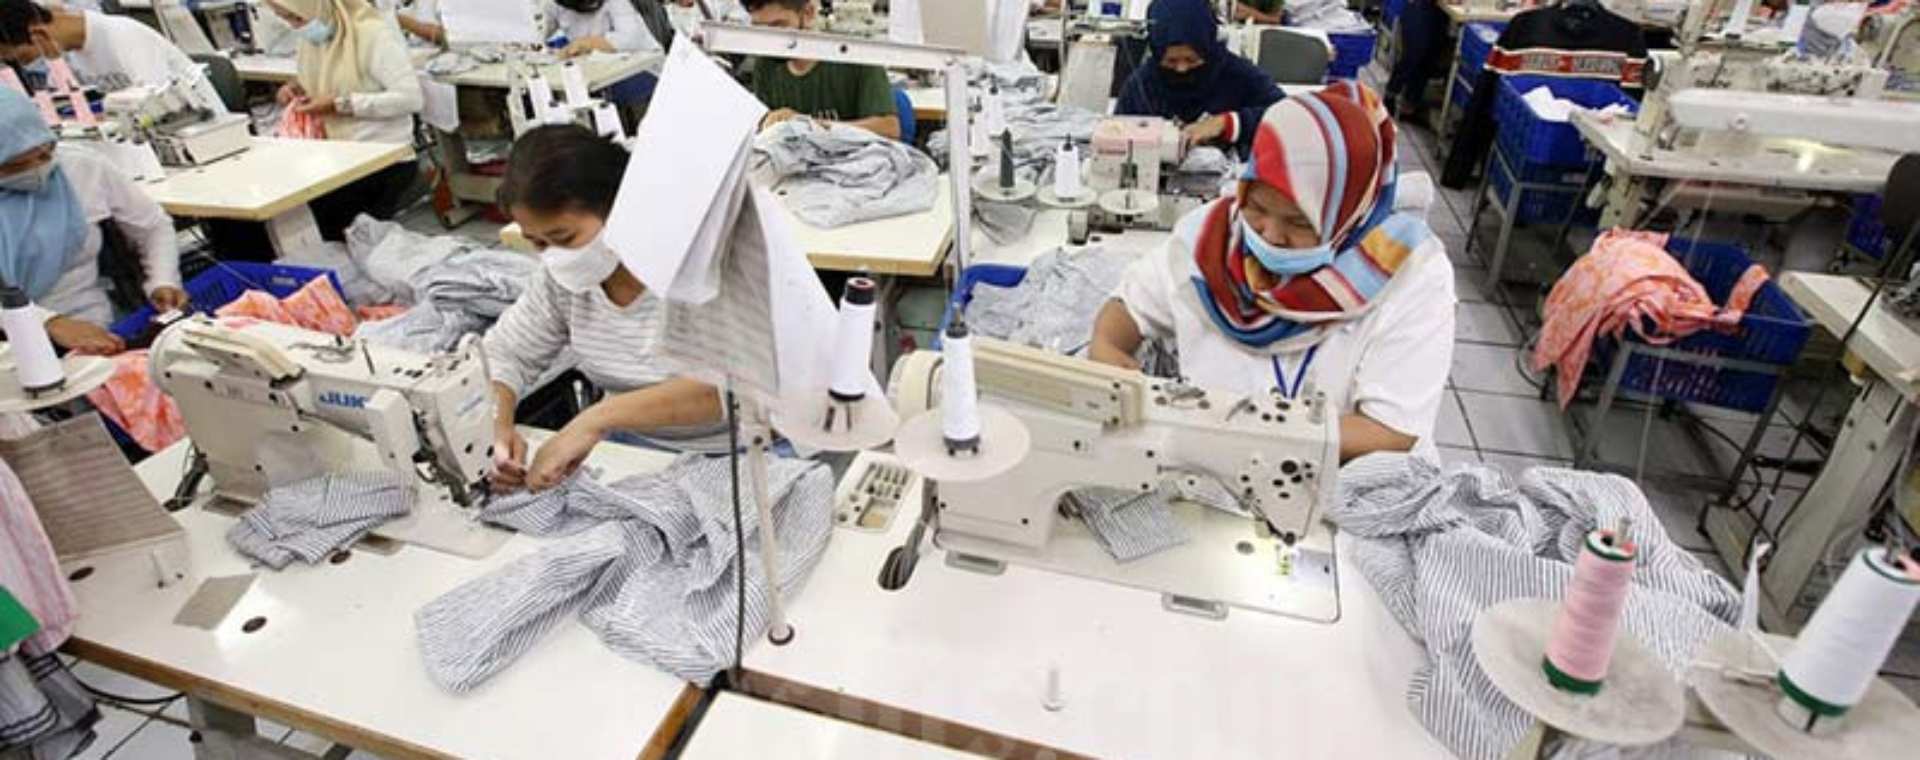 Sejumlah karyawan tengah memproduksi pakaian jadi di salah satu pabrik produsen dan eksportir garmen di Bandung, Jawa Barat, Selasa (25/1/2022). Bisnis/Rachman